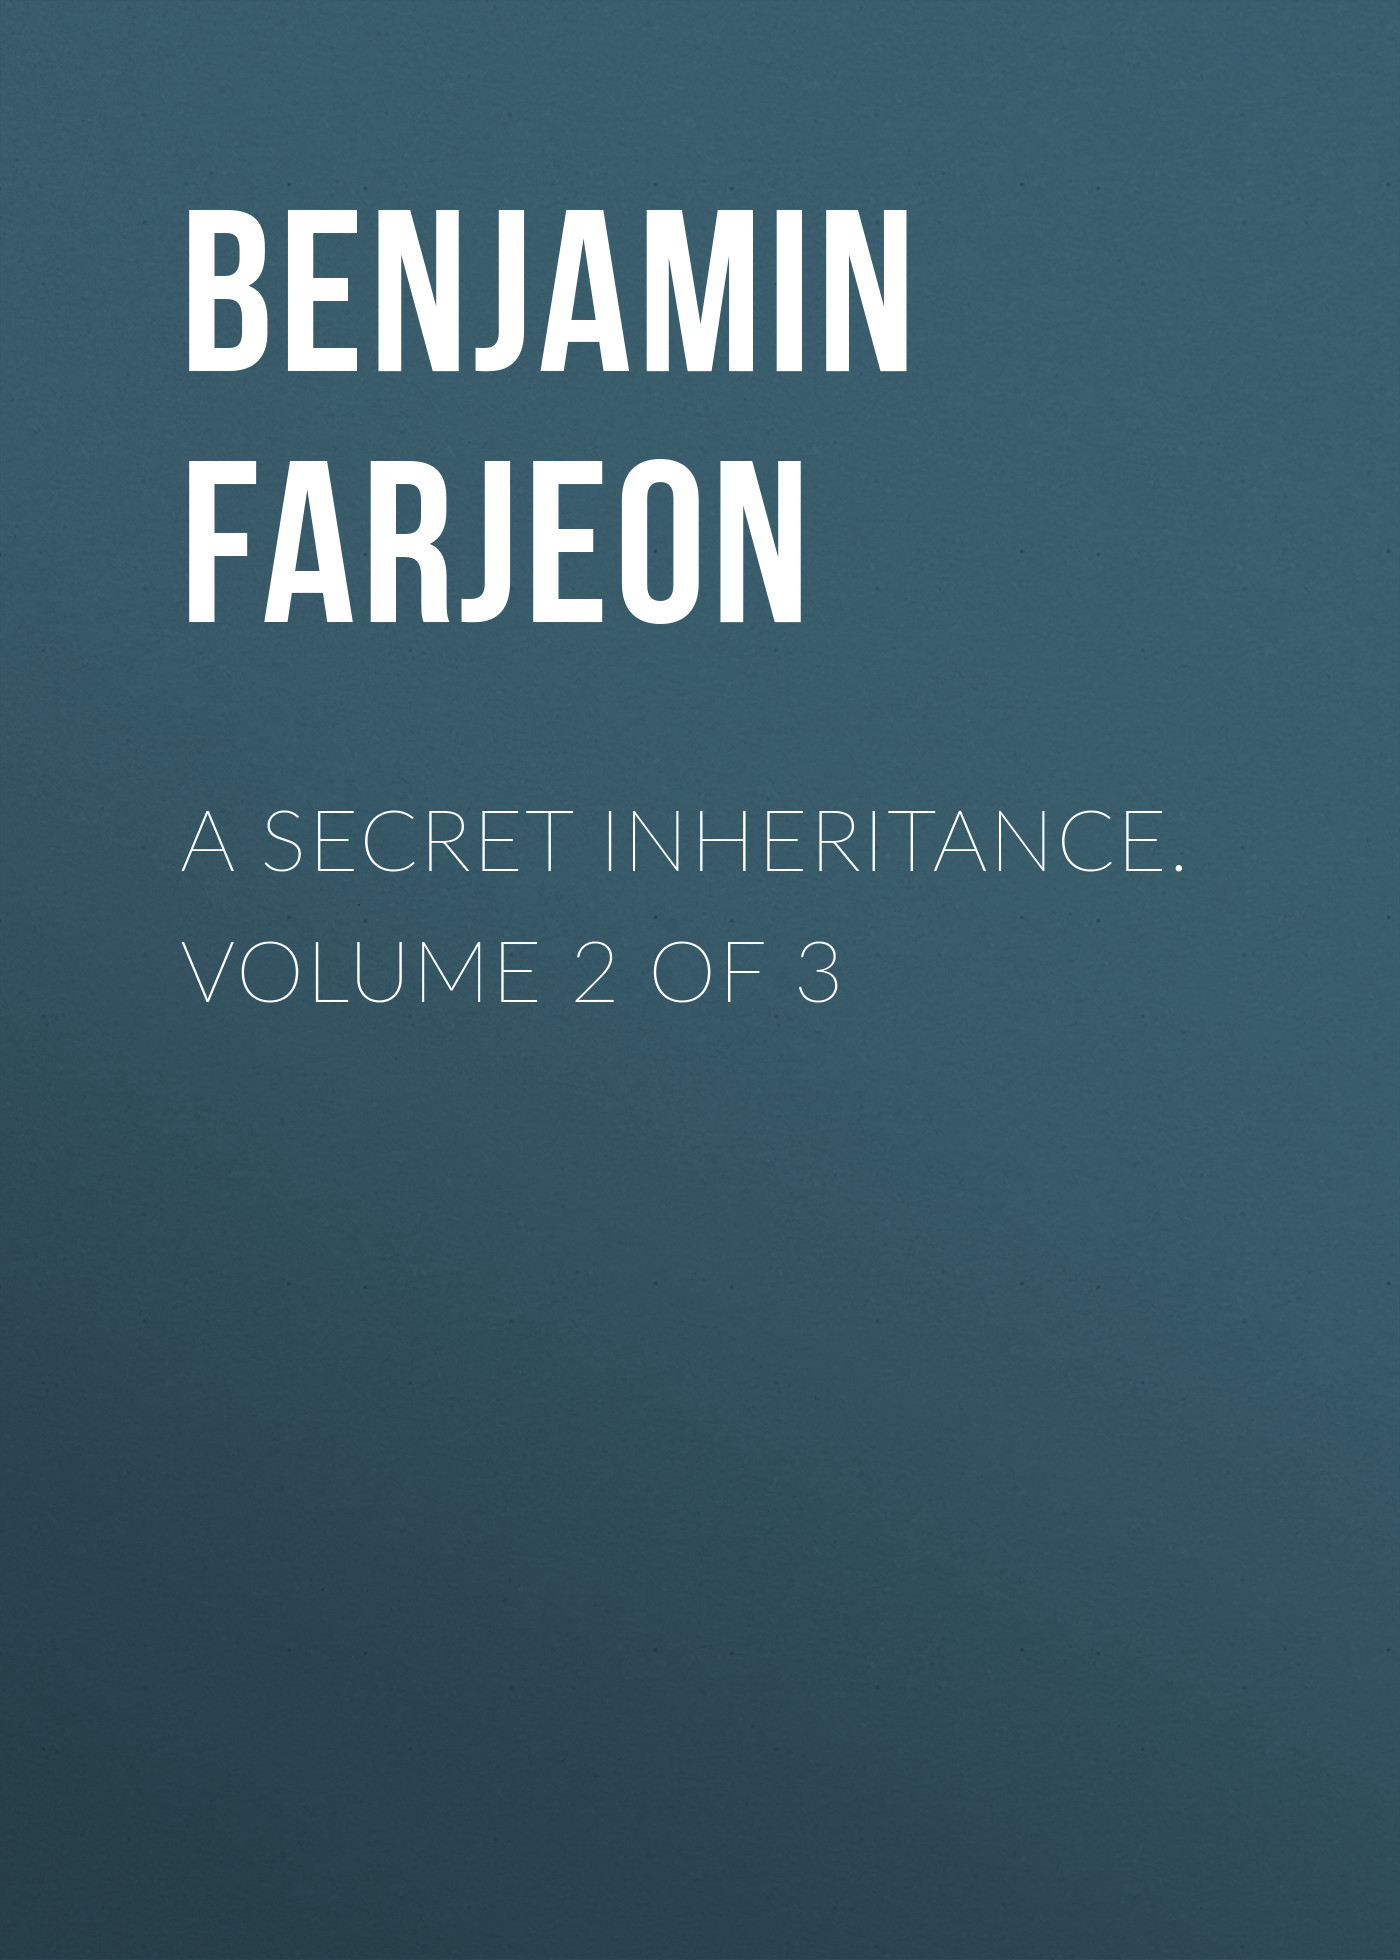 Книга A Secret Inheritance. Volume 2 of 3 из серии , созданная Benjamin Farjeon, может относится к жанру Зарубежная классика. Стоимость электронной книги A Secret Inheritance. Volume 2 of 3 с идентификатором 23147483 составляет 5.99 руб.